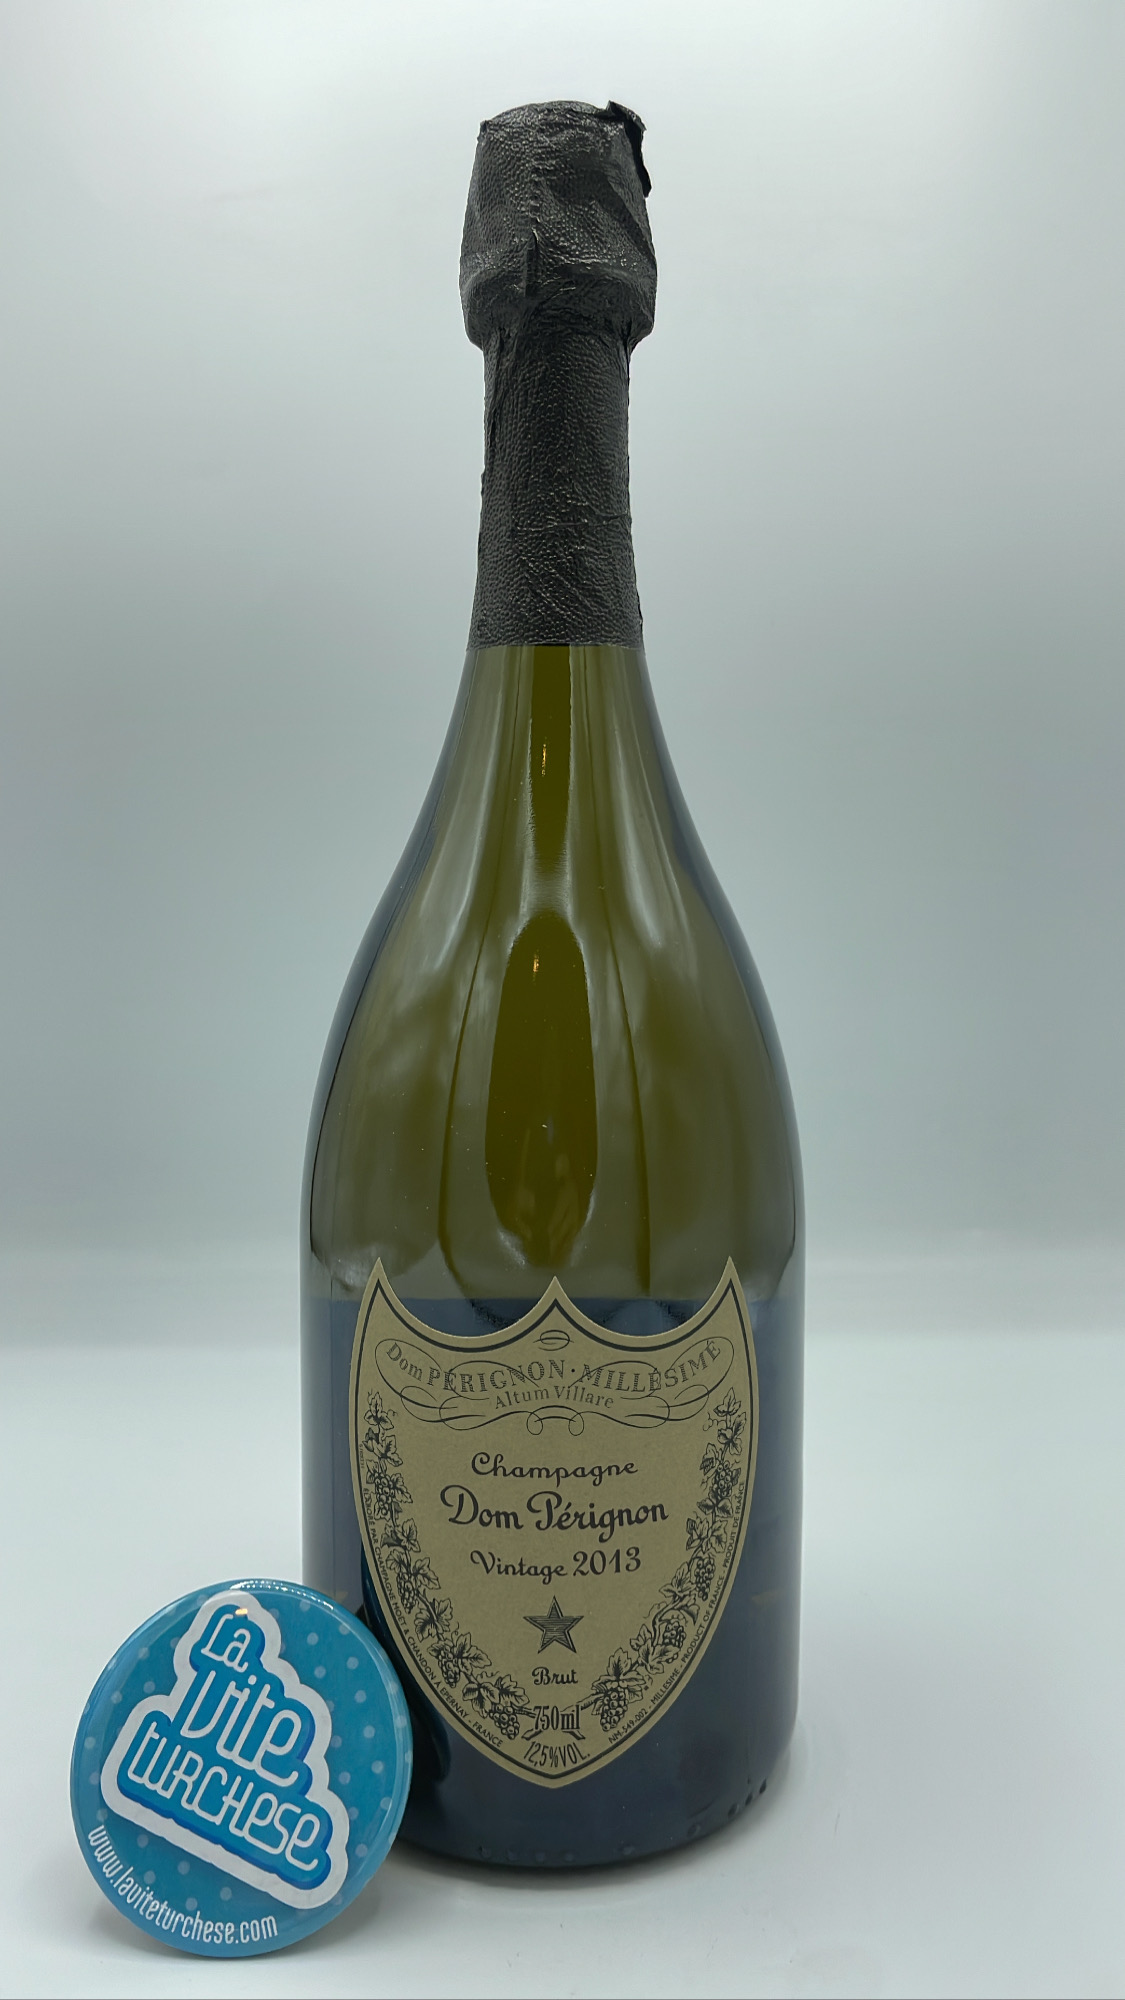 Dom Pérignon - La Turchese - Brut vite - Champagne Vintage 2013